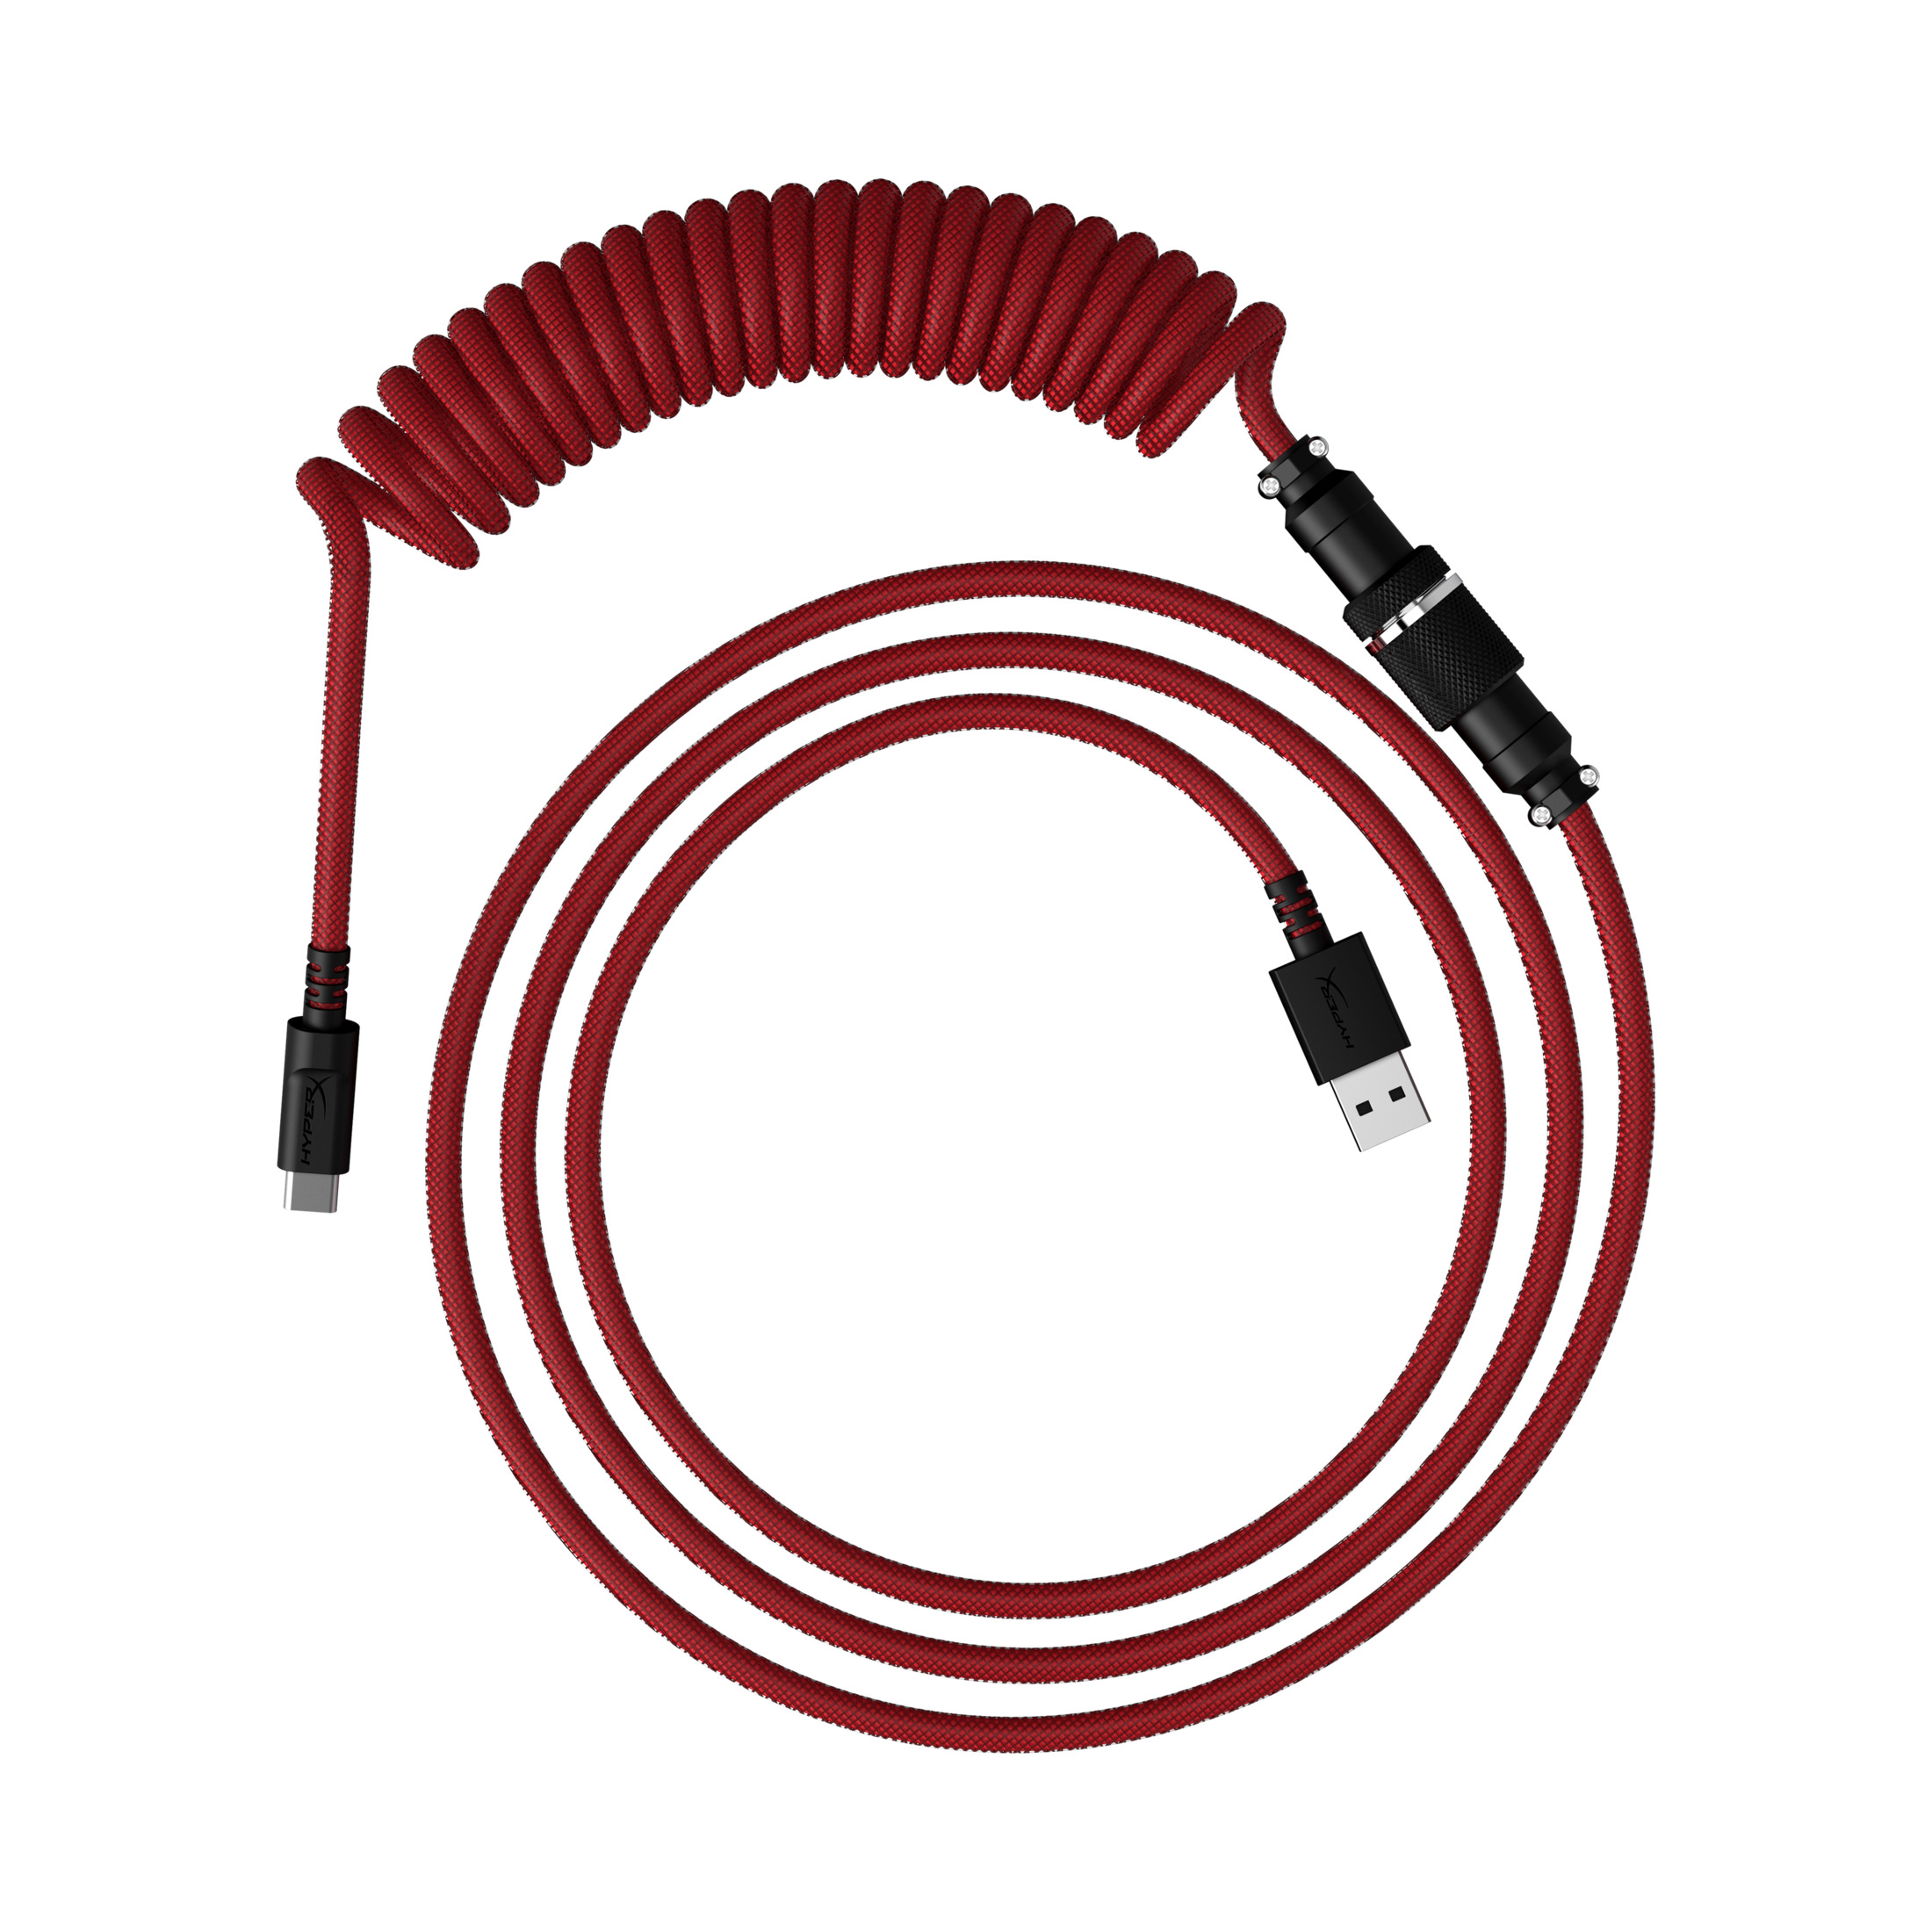 HYPERX 6J677AA USBC COILED CBL RED-BLK, für Spiralkabel die Rot-schwarz Tastatur